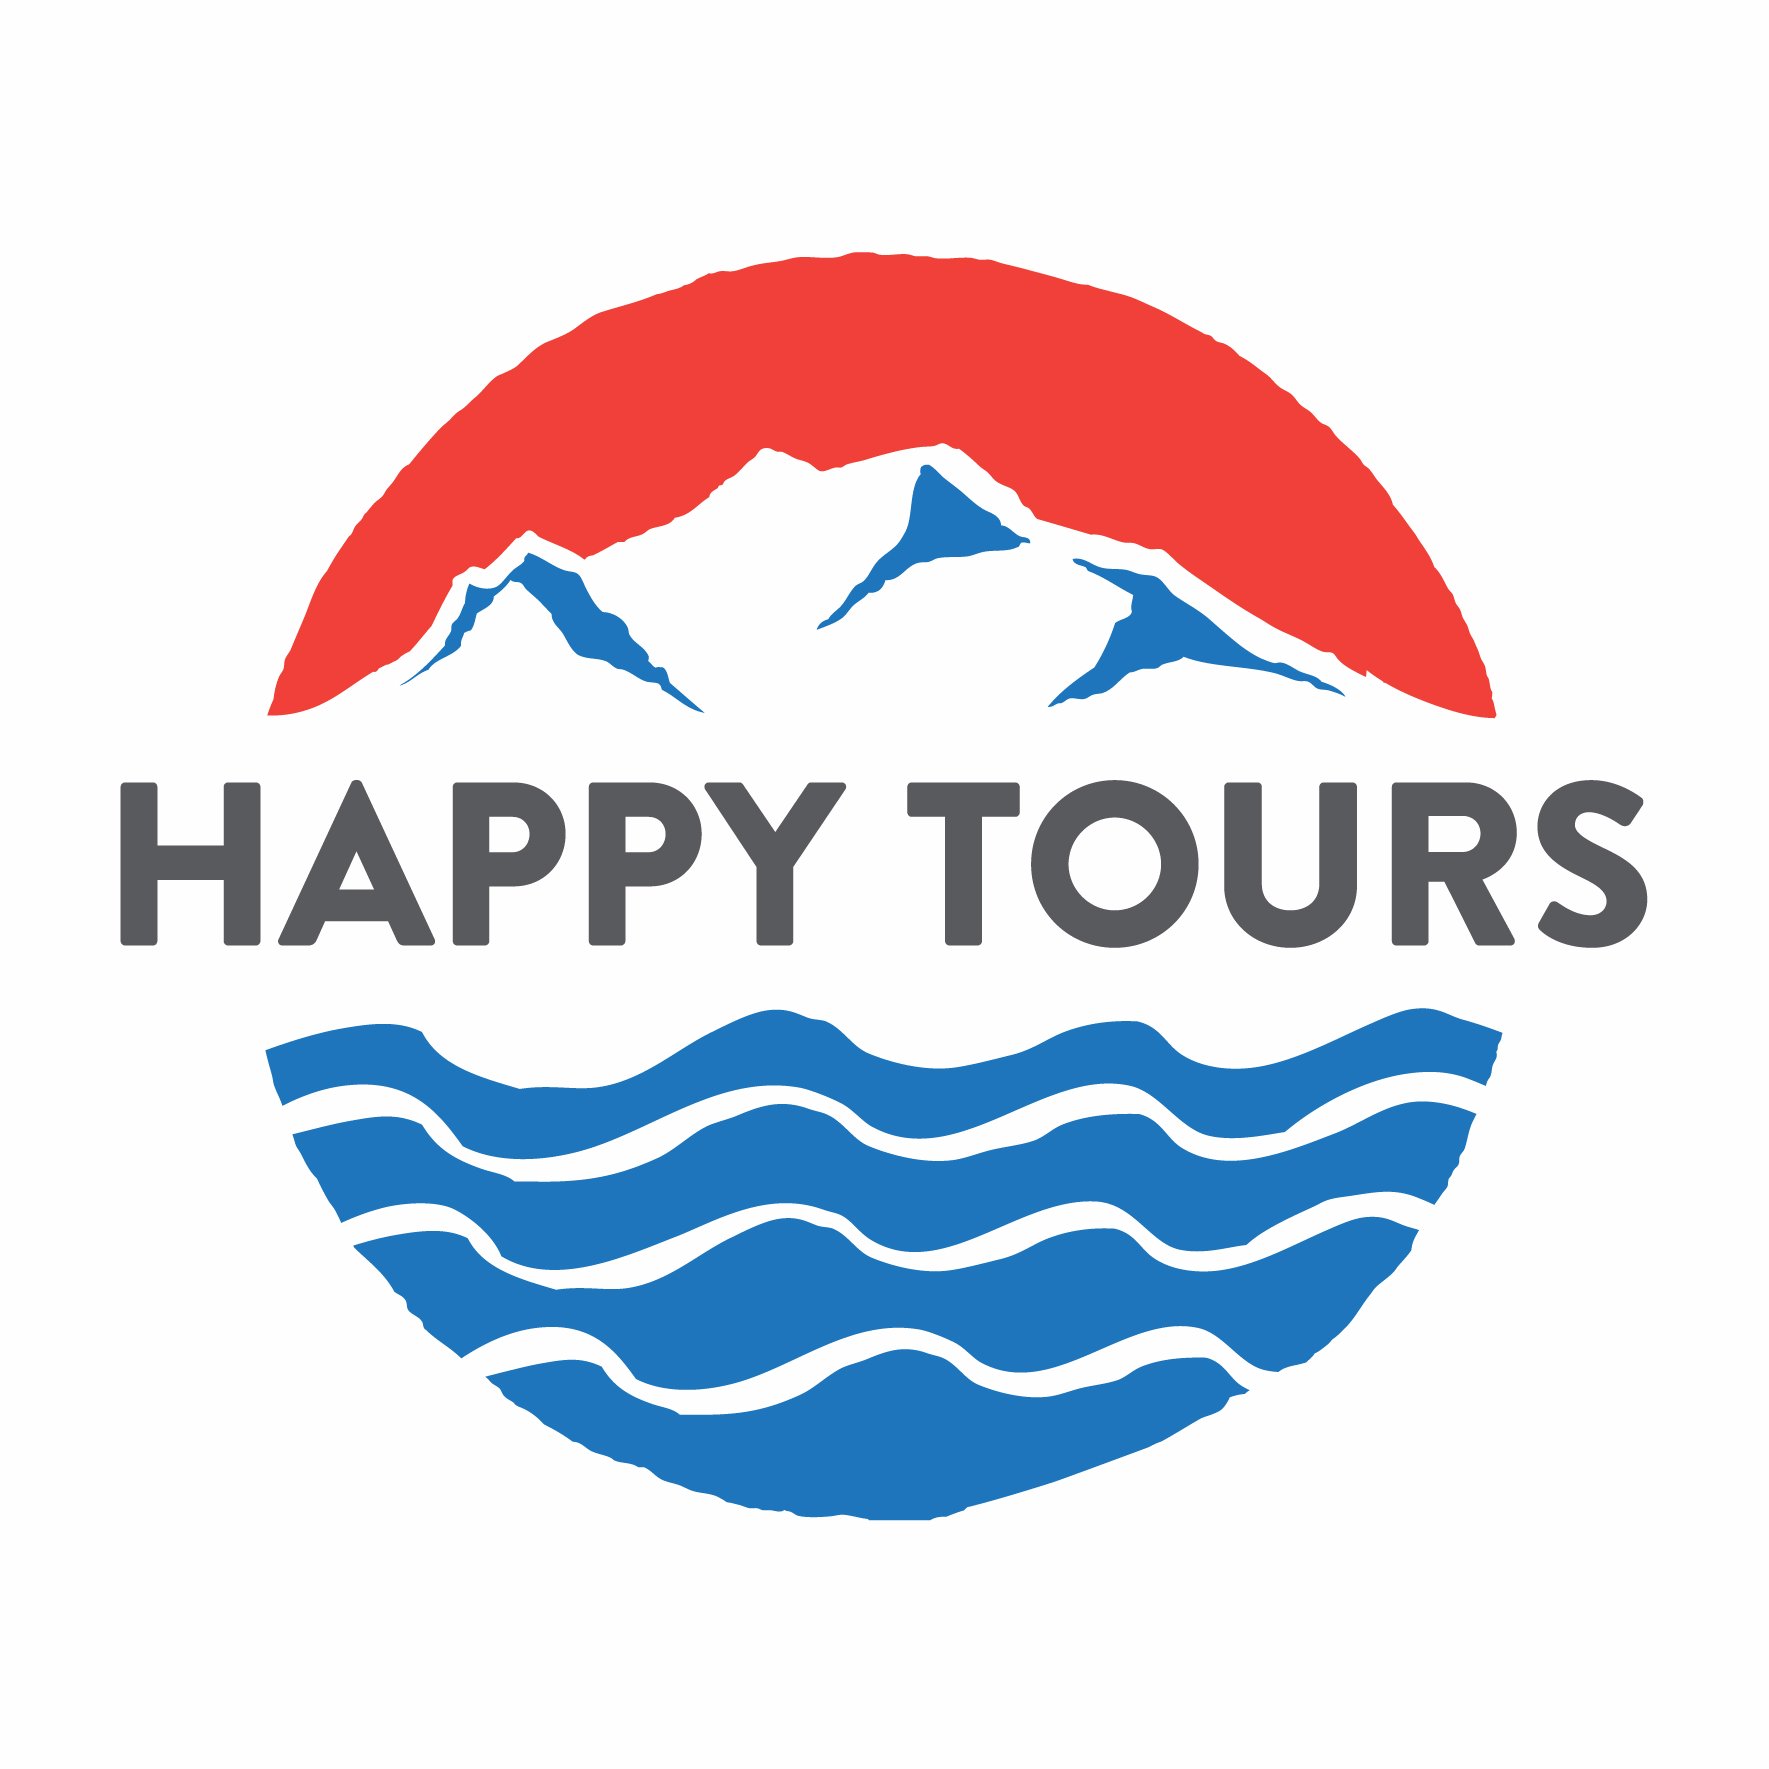 Happy Tours Iceland